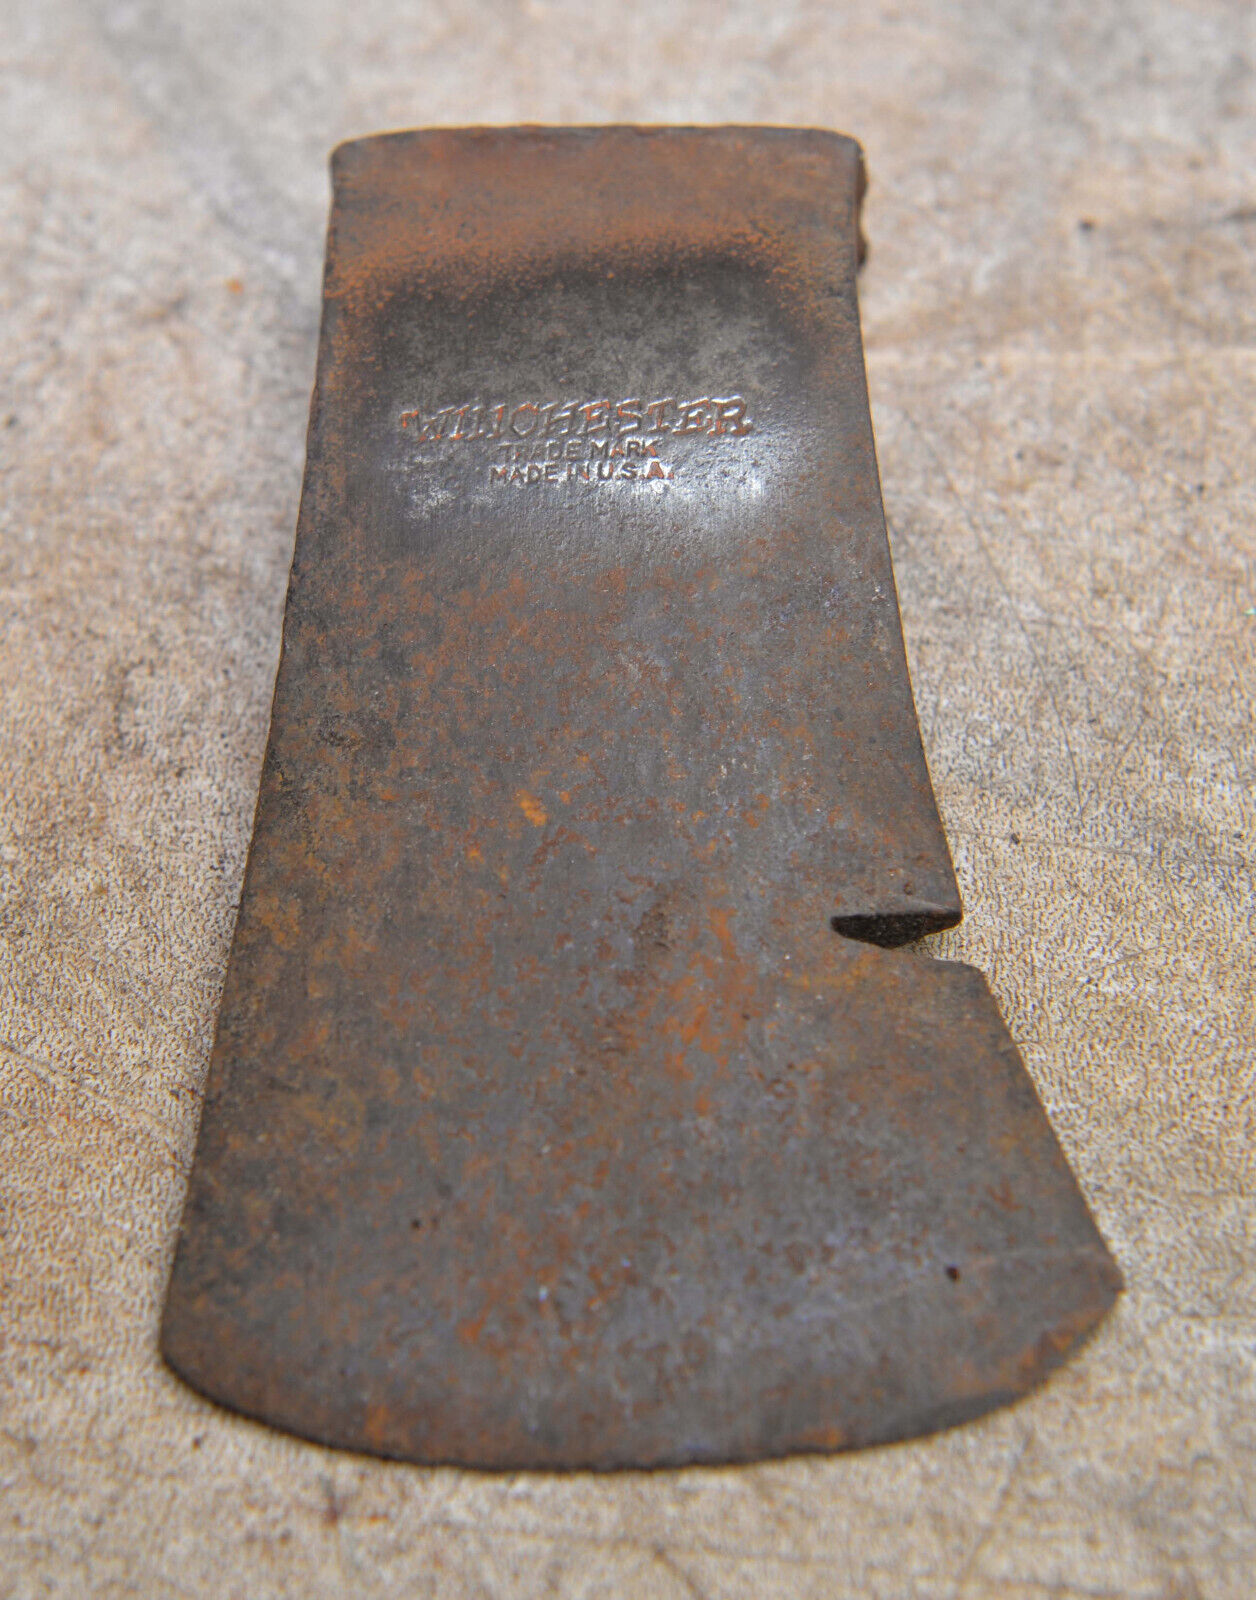 Rare Winchester Boys camp axe hatchet head collectible throwing ax 1 1/2 lb tool